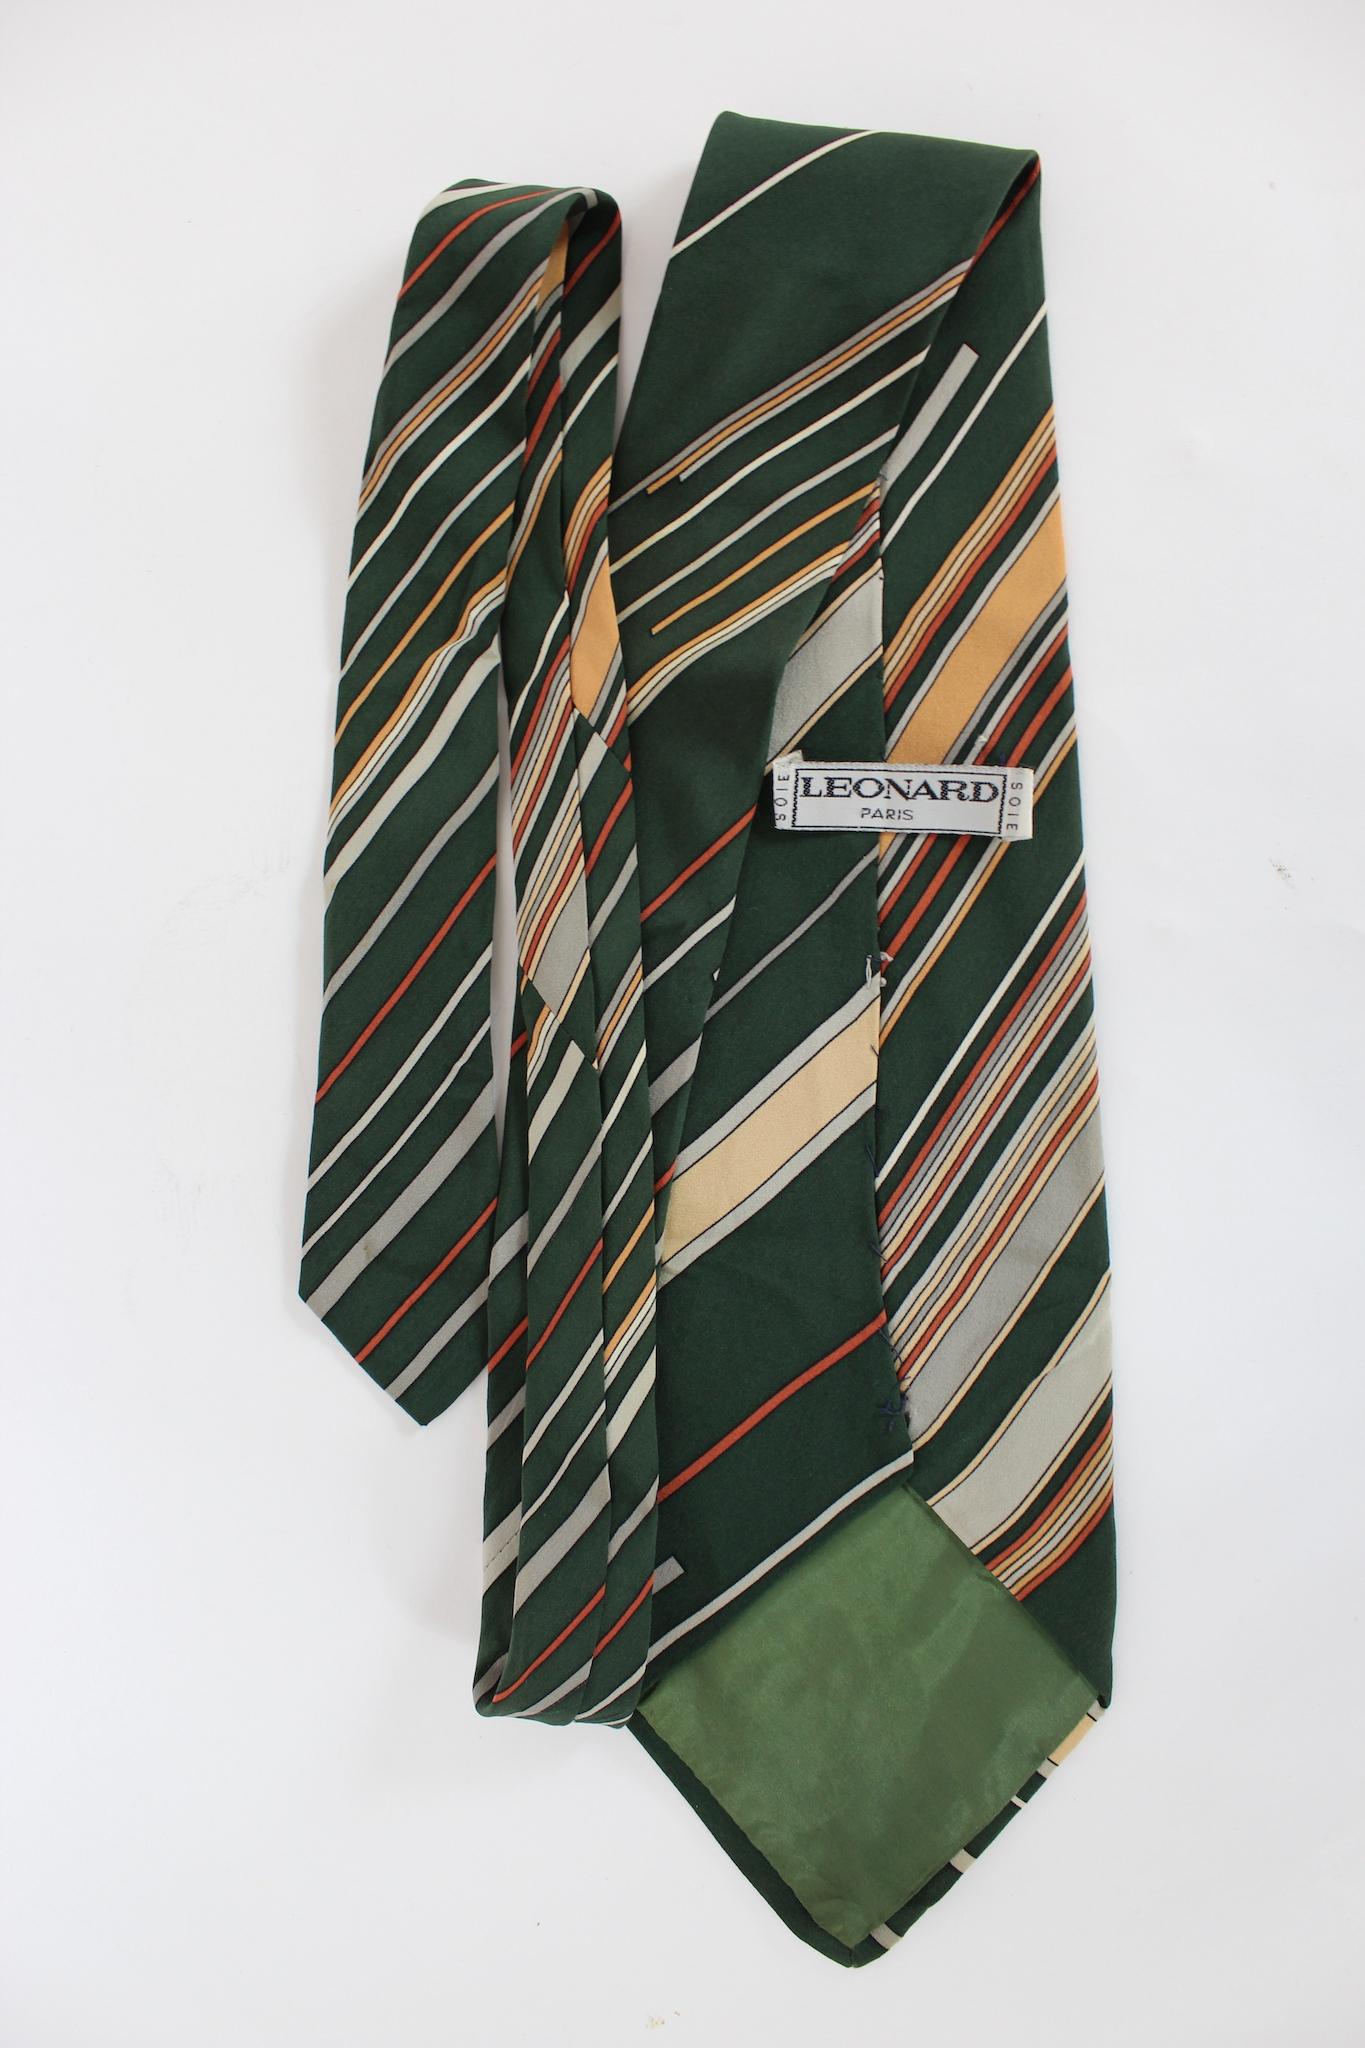 Cravate Leonard Paris vintage des années 80. Couleur verte et beige avec motif rayé. 100% soie. Fabriqué en France.

Longueur : 147 cm
Largeur : 11 cm
